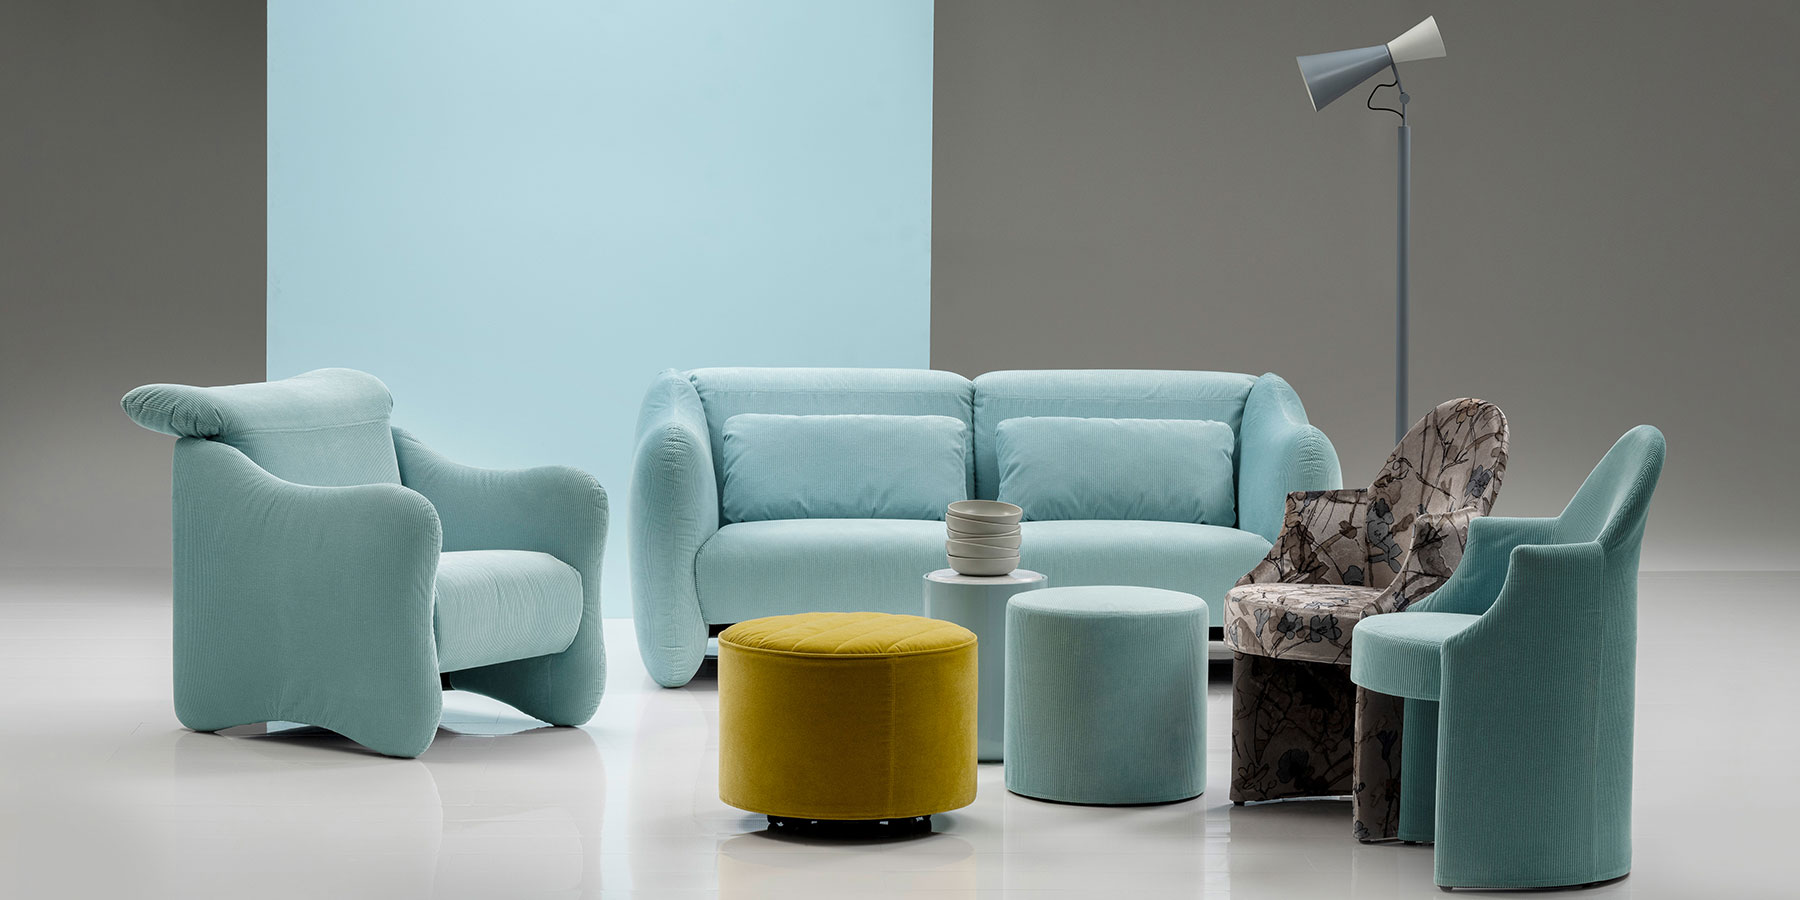 Ein Sessel und ein Sofa der Serie bongo bay von brühl stehen in einer Gruppe mit zwei weiteren Sesseln, zwei runden Hockern sowie einem zylindrischen Beistelltisch.